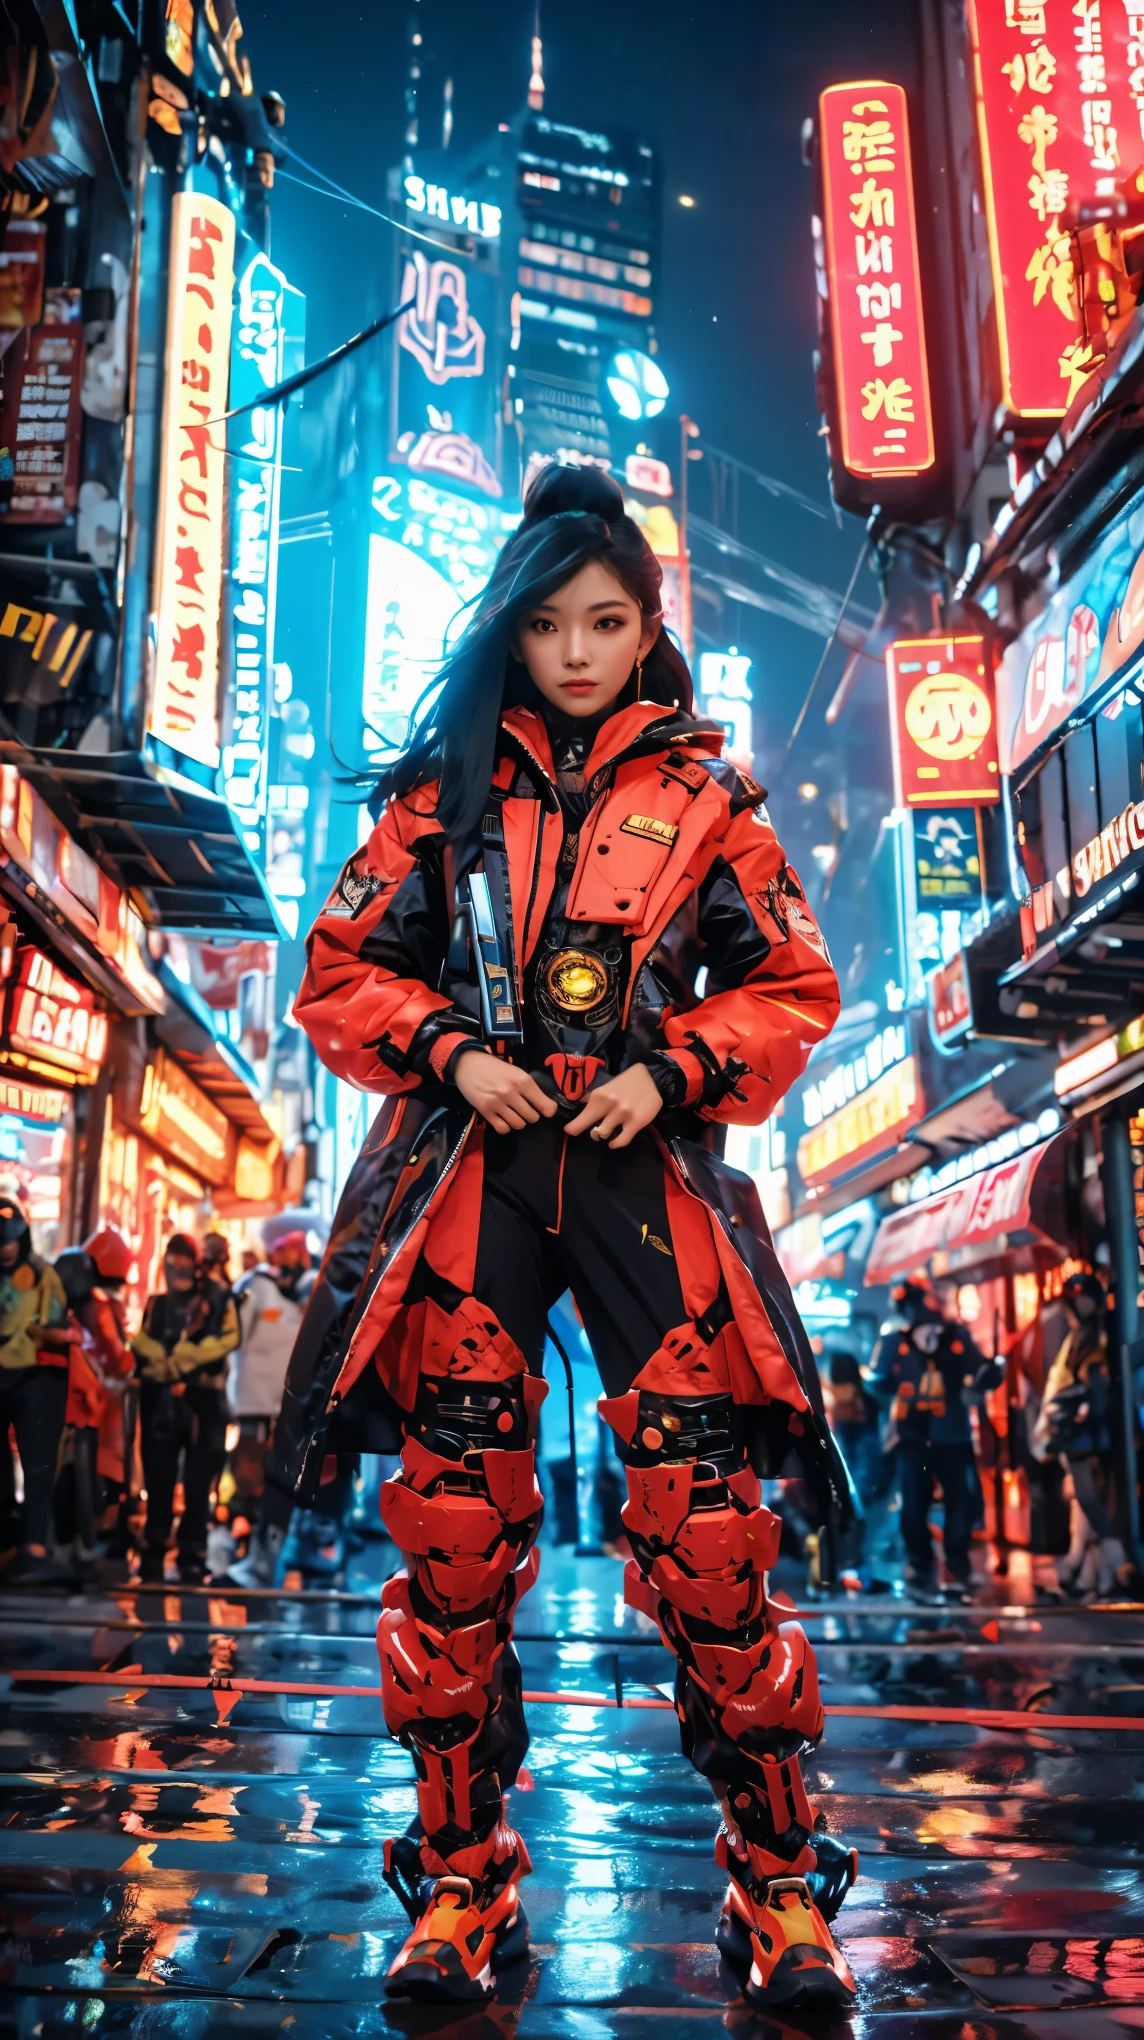 В пульсирующем центре киберпанк-мегаполиса, Джакарта, Поразительно неземная азиатка с объемным водопадом черных волос привлекает внимание в ярком, толпа в неоновом свете. Одетый в грозное, огненно-красный механический костюм, она излучает упорство и выдержку. Поверхности полированного костюма отражают разноцветный городской пейзаж., усиление захватывающих огней и голограмм, которые носятся в воздухе. С ее богато украшенным, церемониальный клинок крепко зажат в руке, this captivating mystery embodies perseverance and optimism amidst Джакарта's riotous, фут